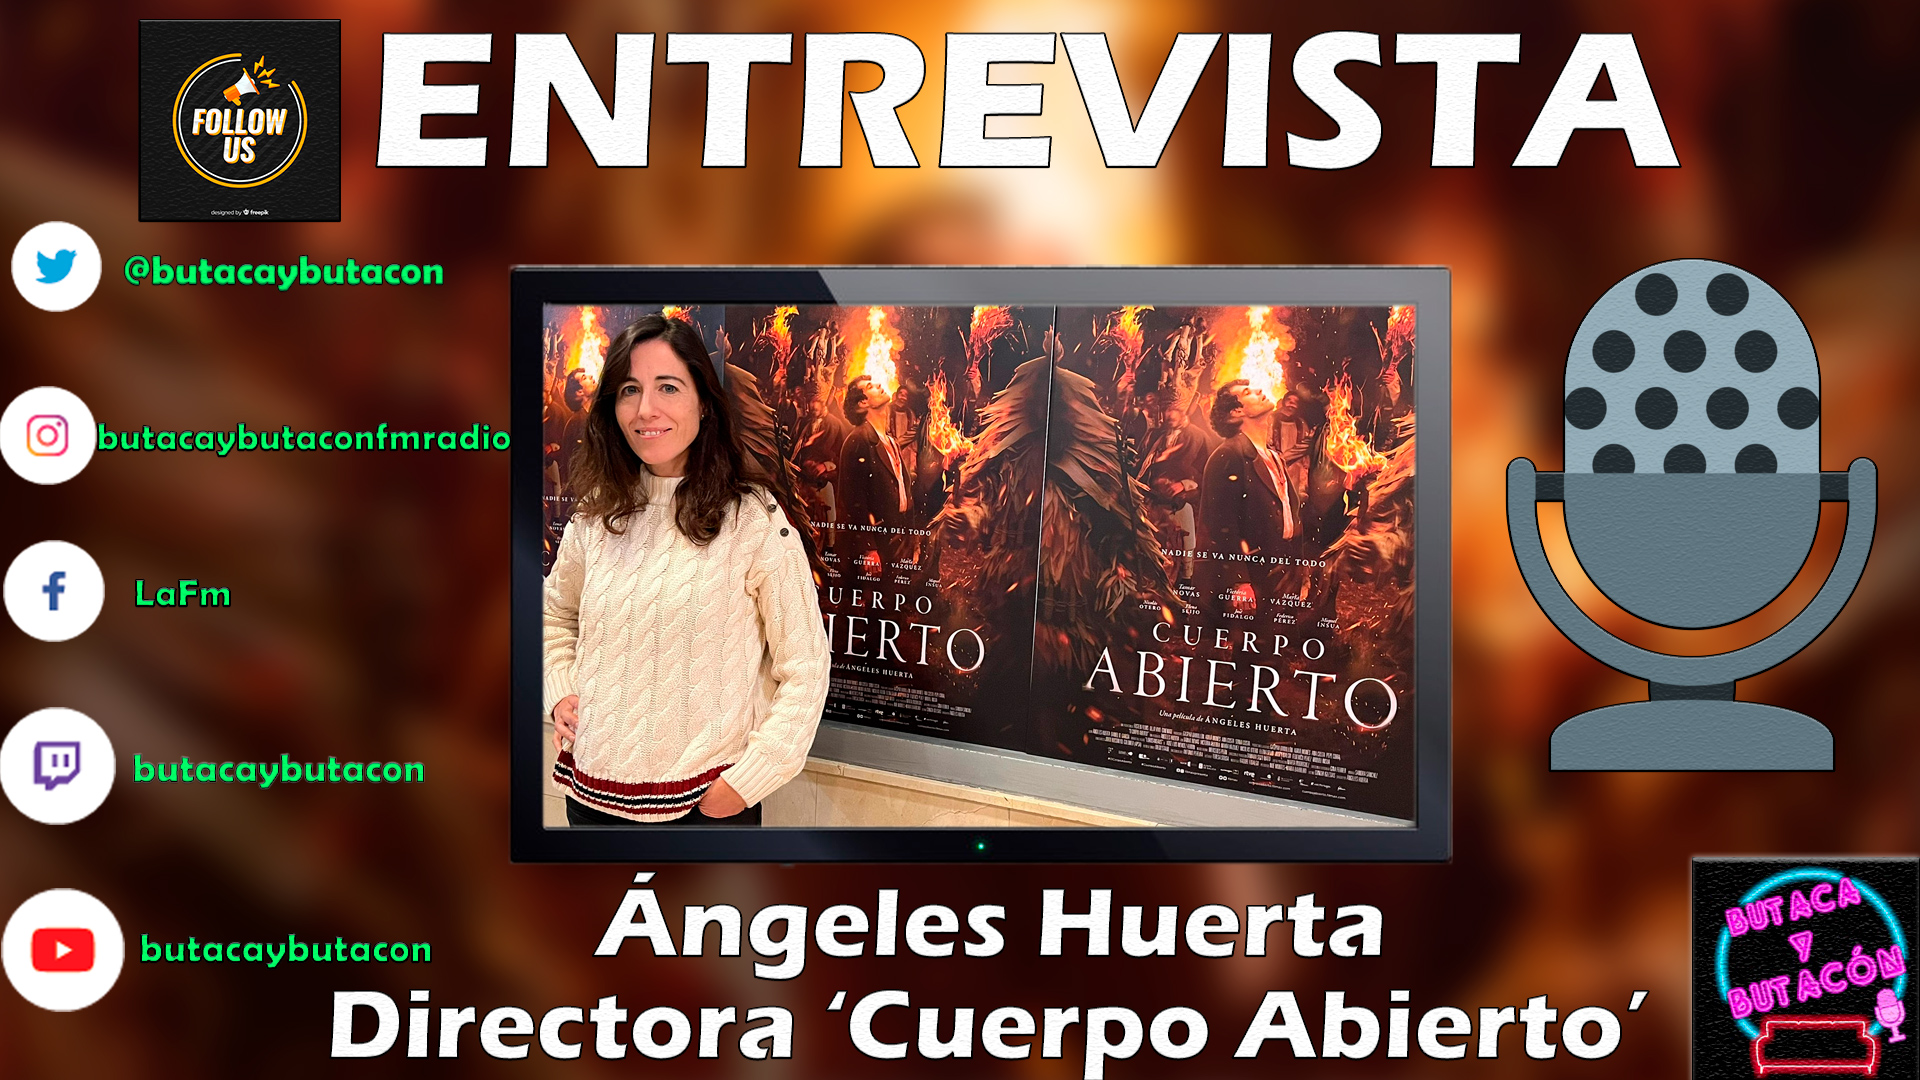 Ángeles Huerta: "Puedes huir de muchos terrores externos pero de ti mismo nunca"